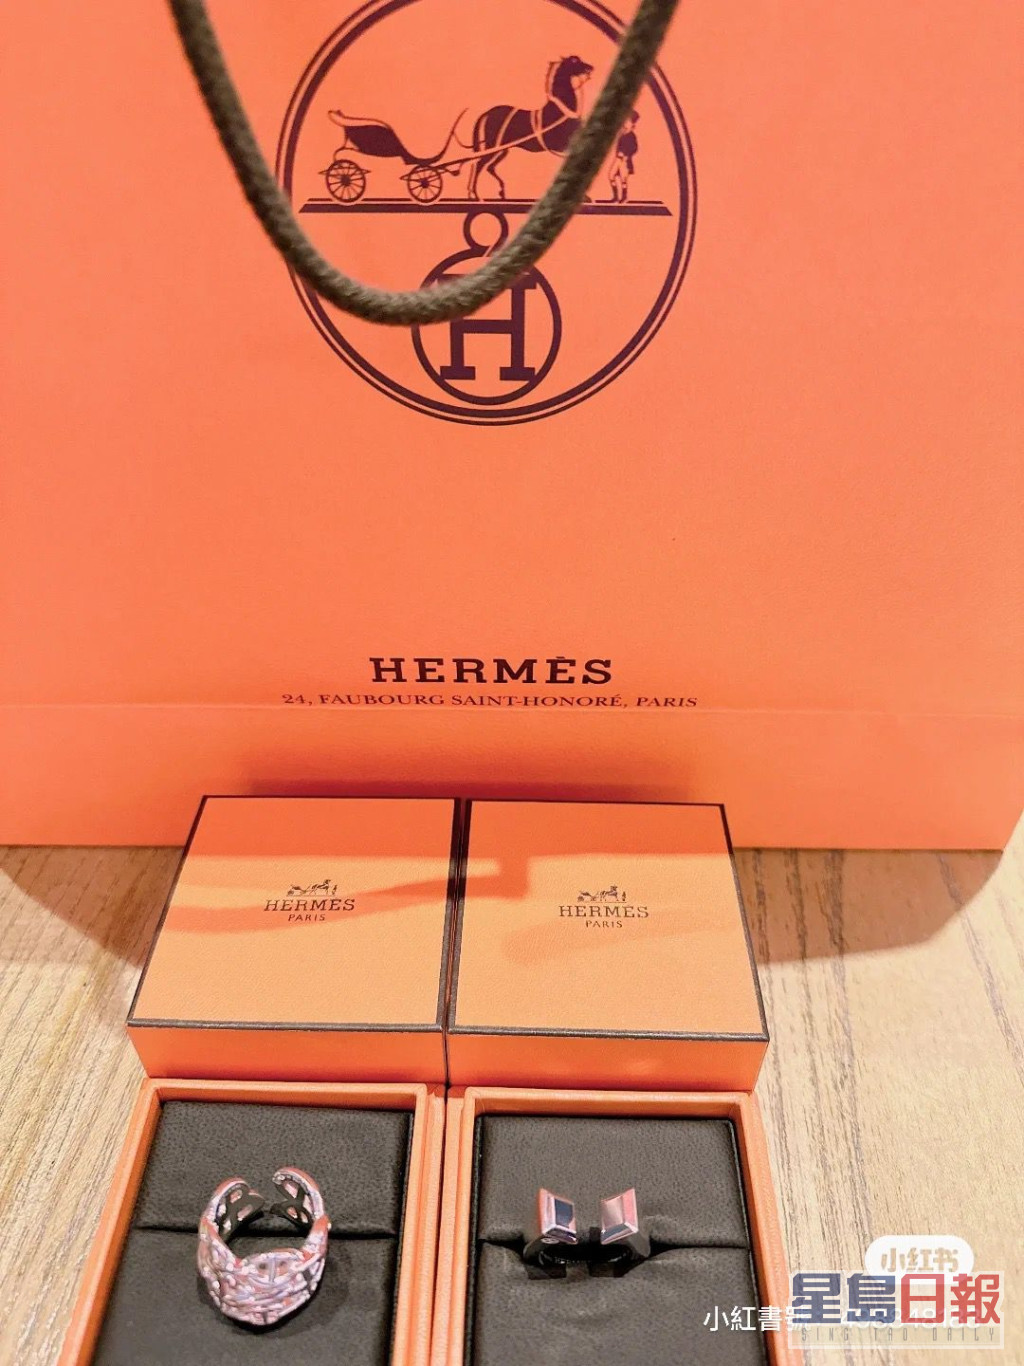 王妤娴日前晒出Hermès新战利品。